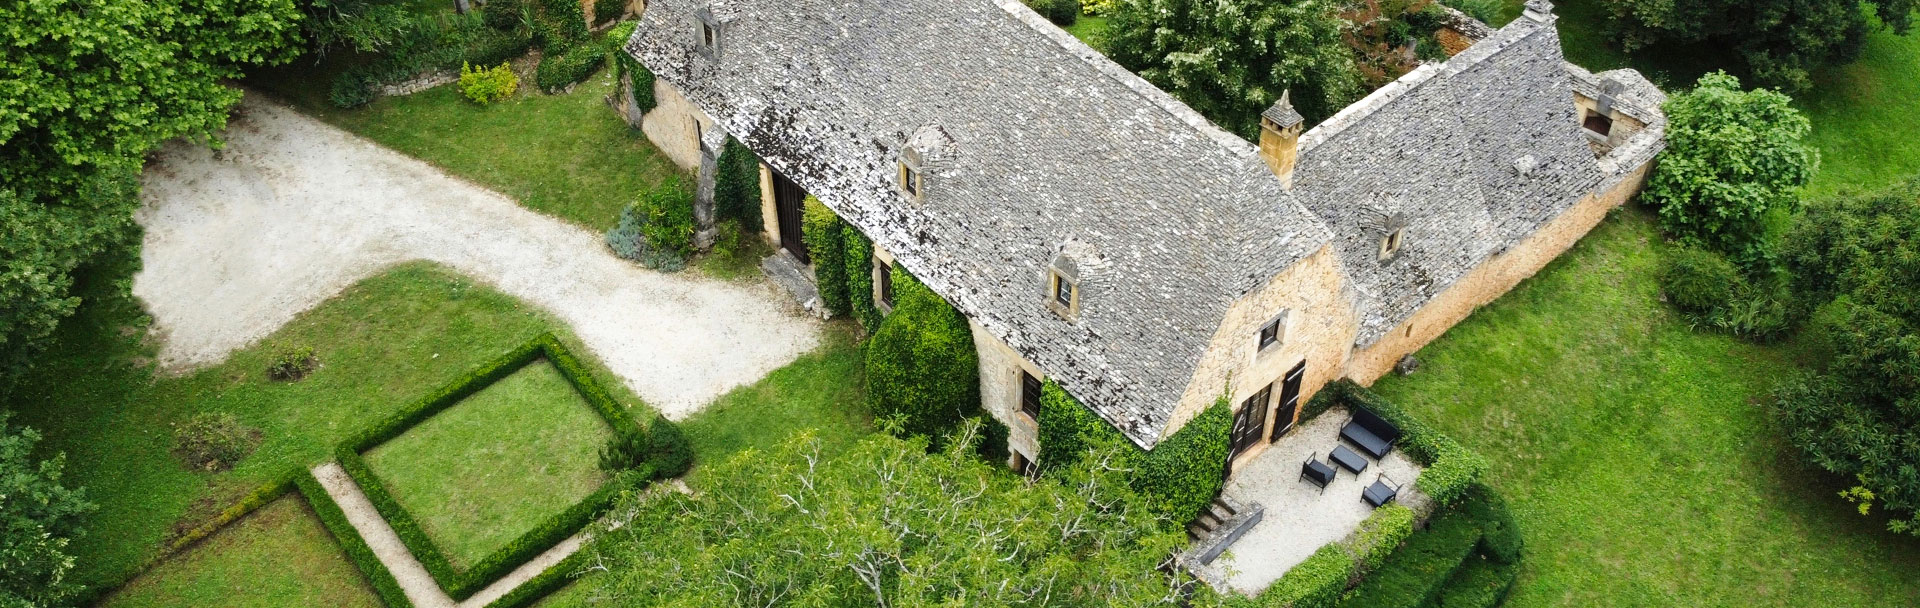 Agence Périgord Noir Immobilier : annonces maison Périgord Noir et toute la Dordogne